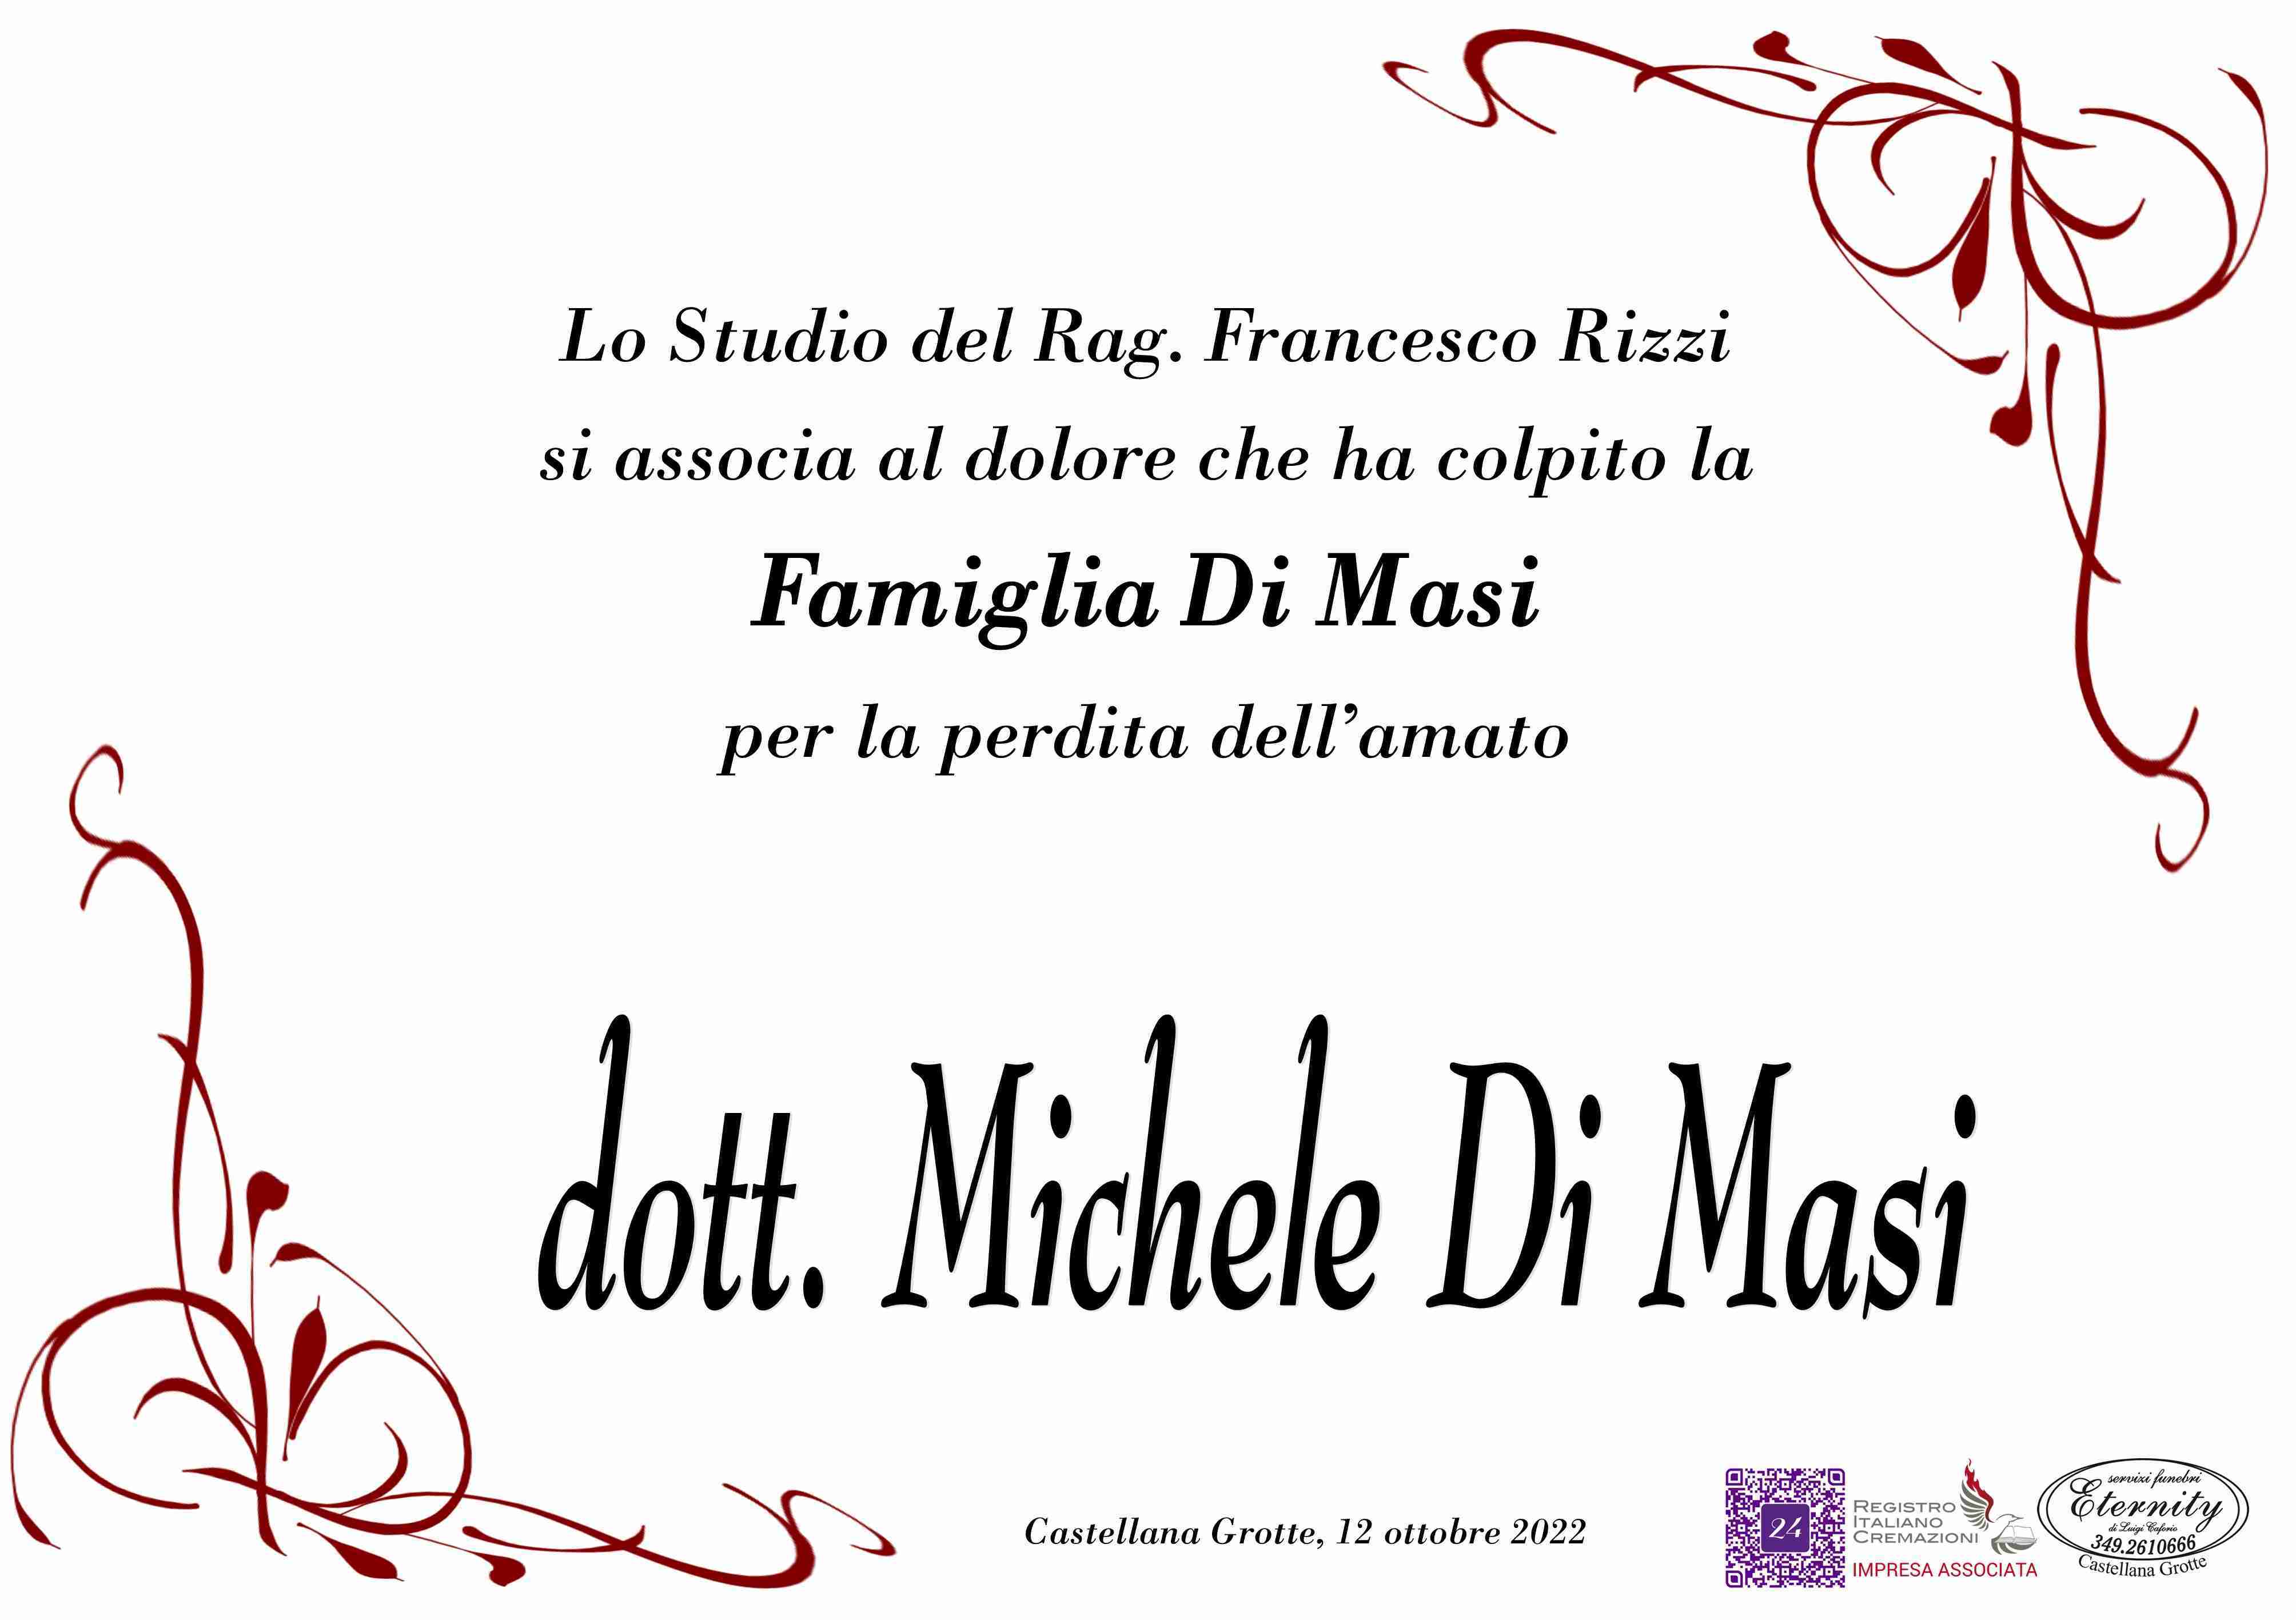 Michele Di Masi